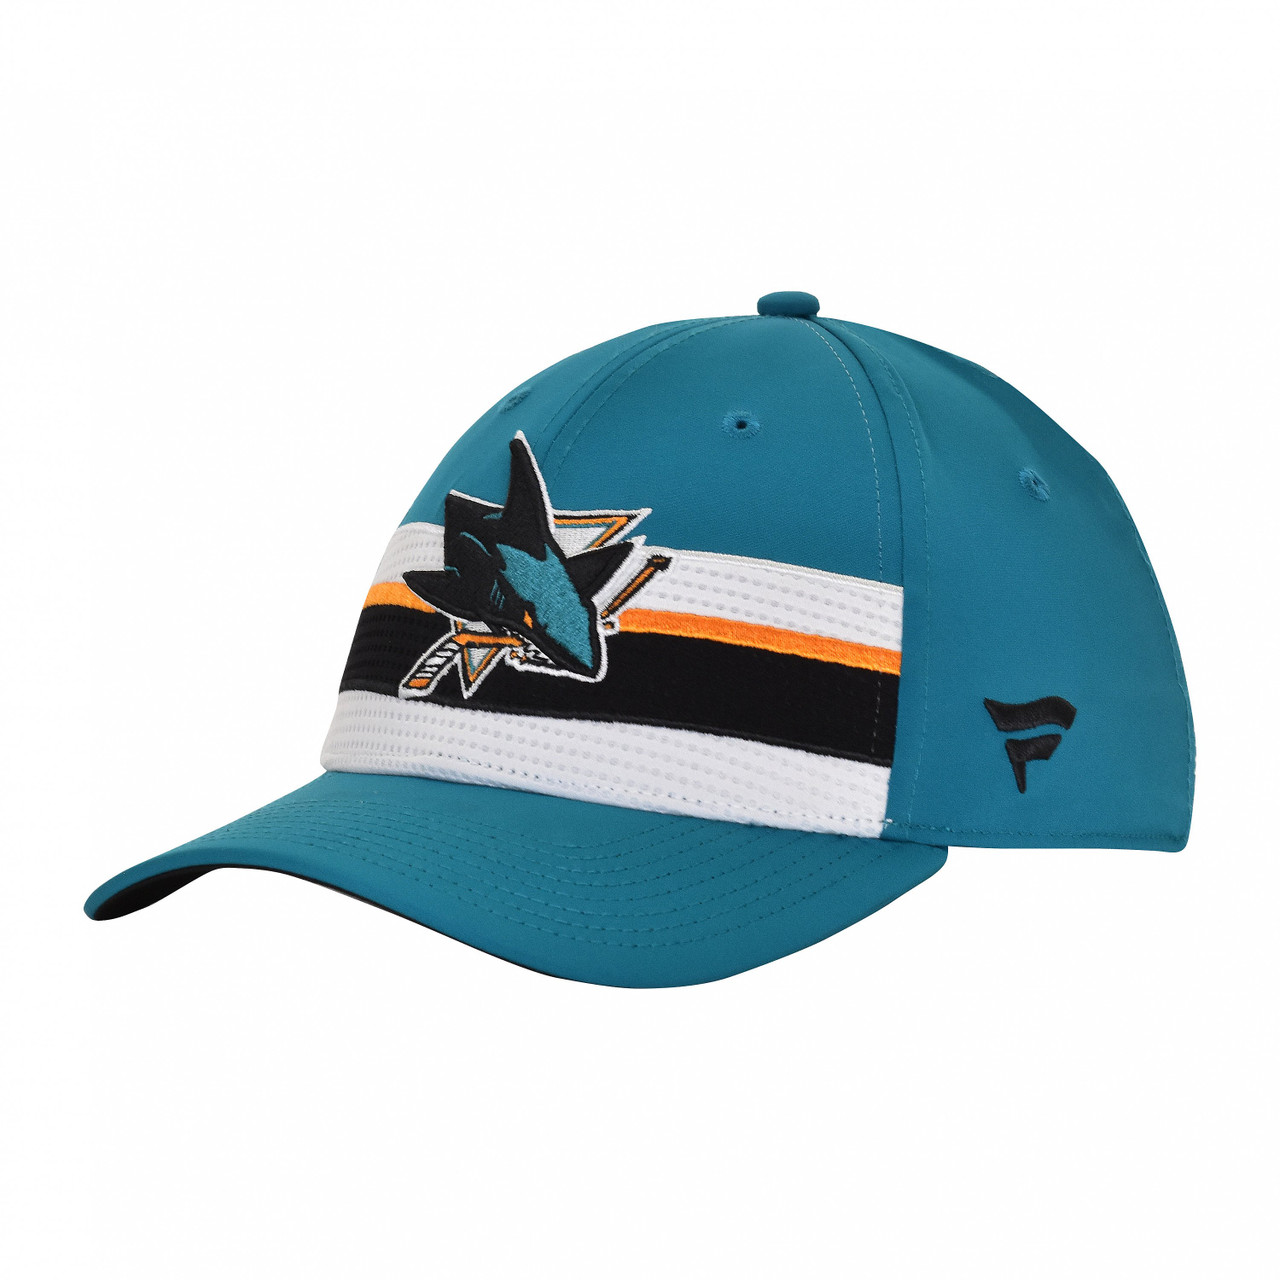 Men's 2023 NHL All-Star Game Fanatics Branded Black Adjustable Hat